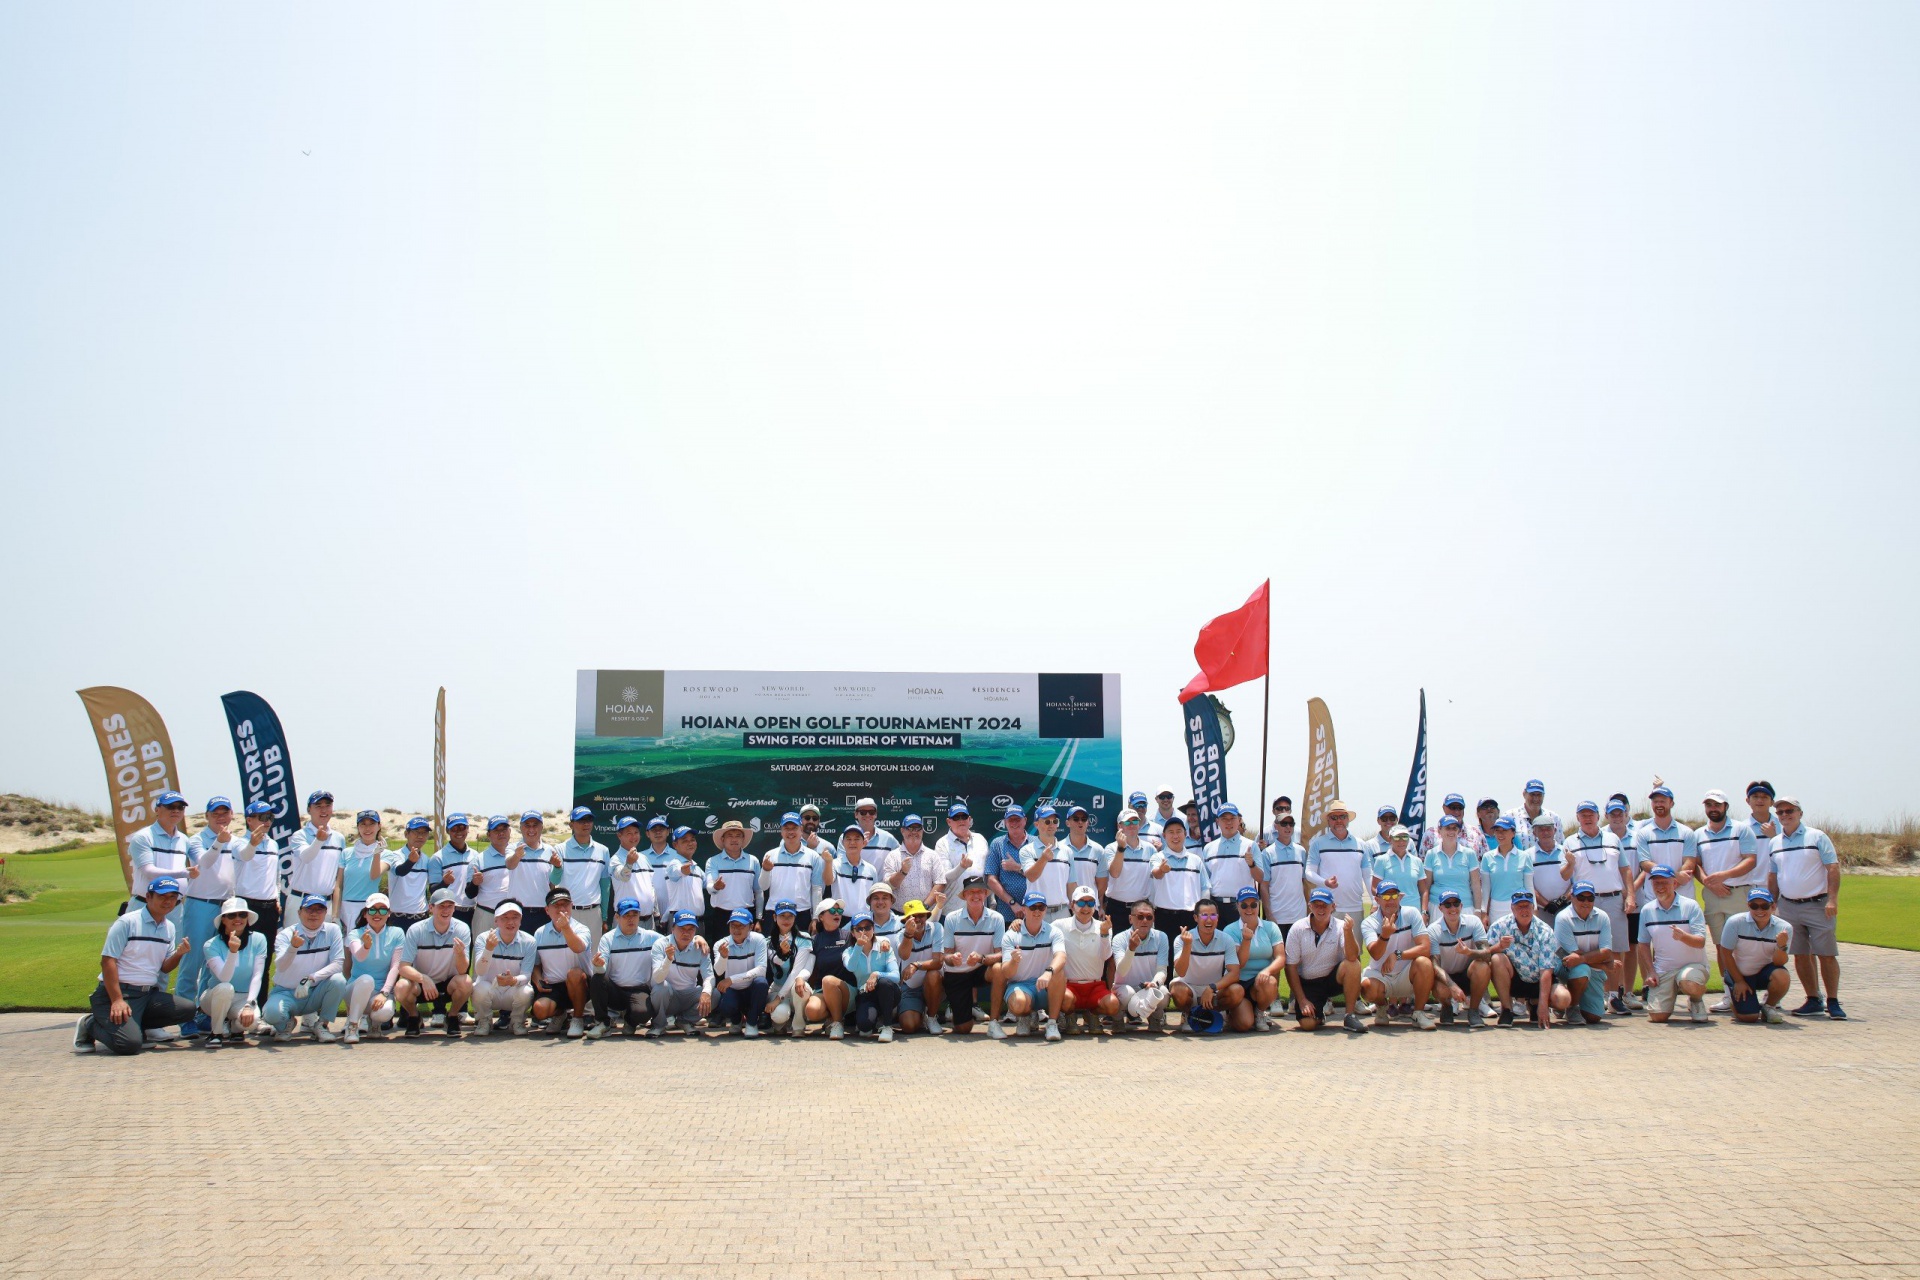 Các gôn thủ tham gia giải đấu Hoiana Open Golf Tournament 2024 – “Vì trẻ em Việt Nam